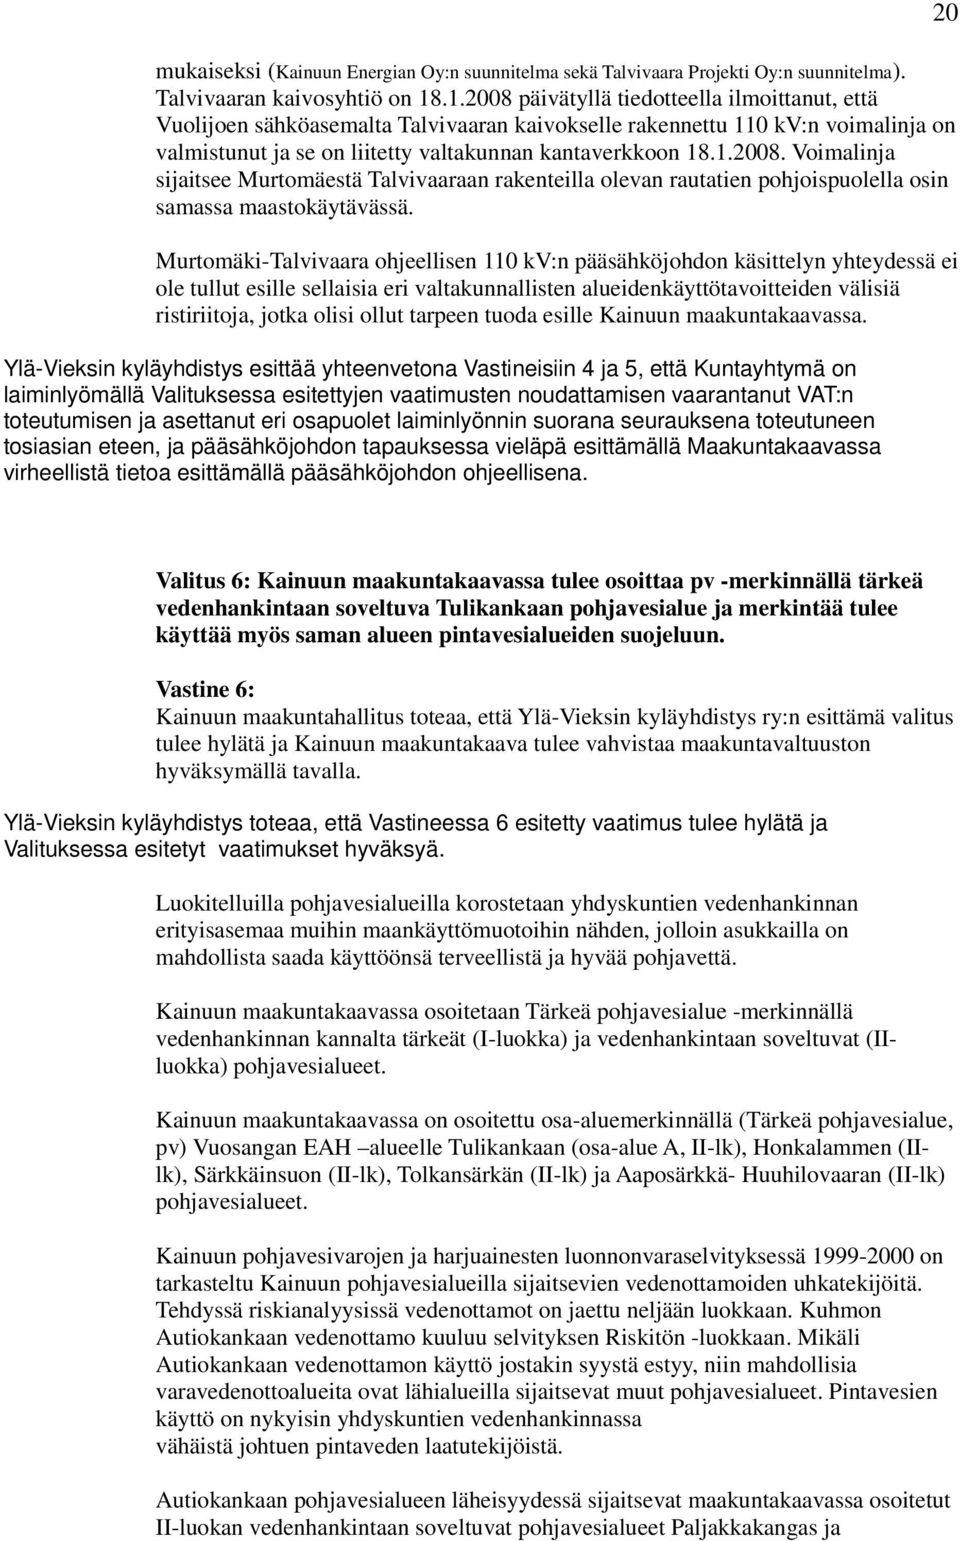 Murtomäki-Talvivaara ohjeellisen 110 kv:n pääsähköjohdon käsittelyn yhteydessä ei ole tullut esille sellaisia eri valtakunnallisten alueidenkäyttötavoitteiden välisiä ristiriitoja, jotka olisi ollut